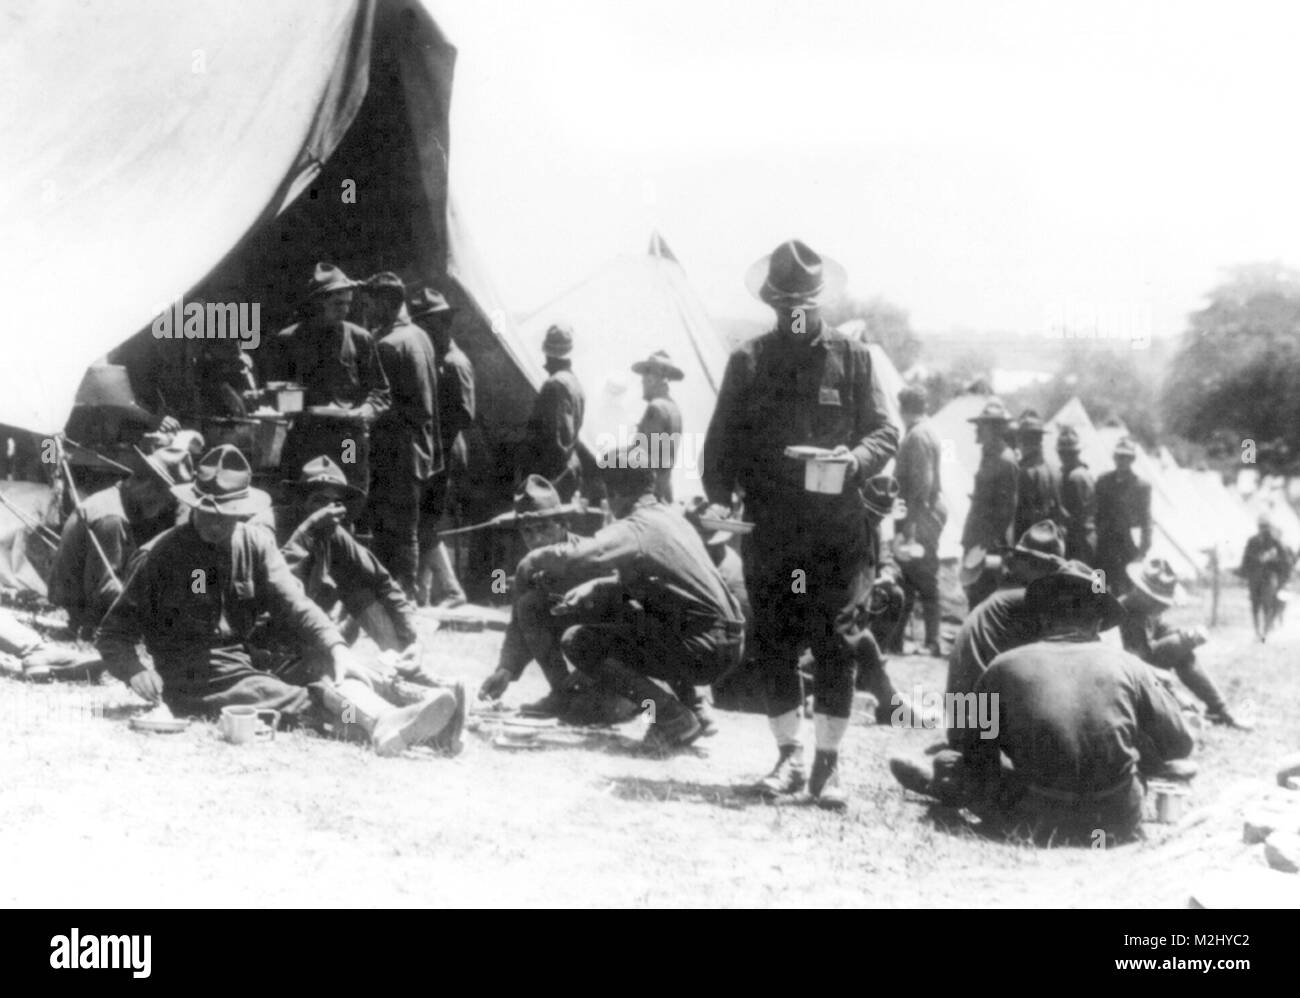 Expédition contre Pancho Villa, NY des unités de la Garde nationale, 1916 Banque D'Images